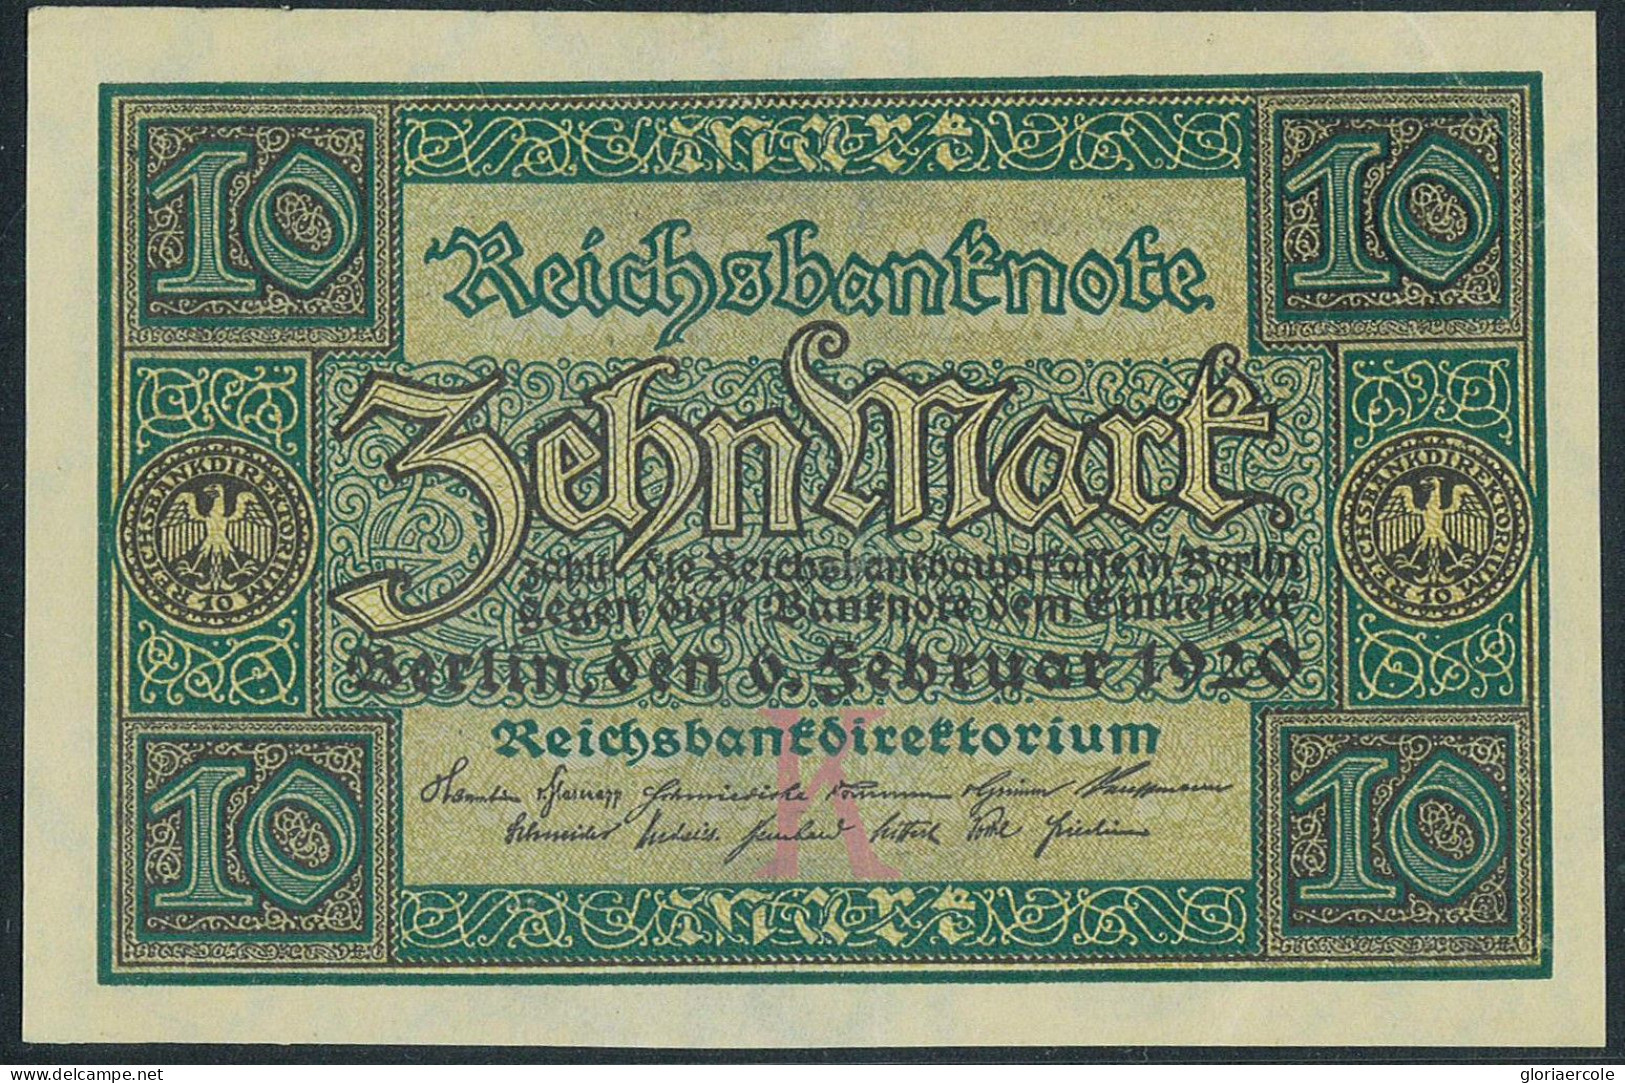 P2755 - GERMANY PAPER MONEY PICK 67 IN UNC,. CONDITION. - Non Classificati